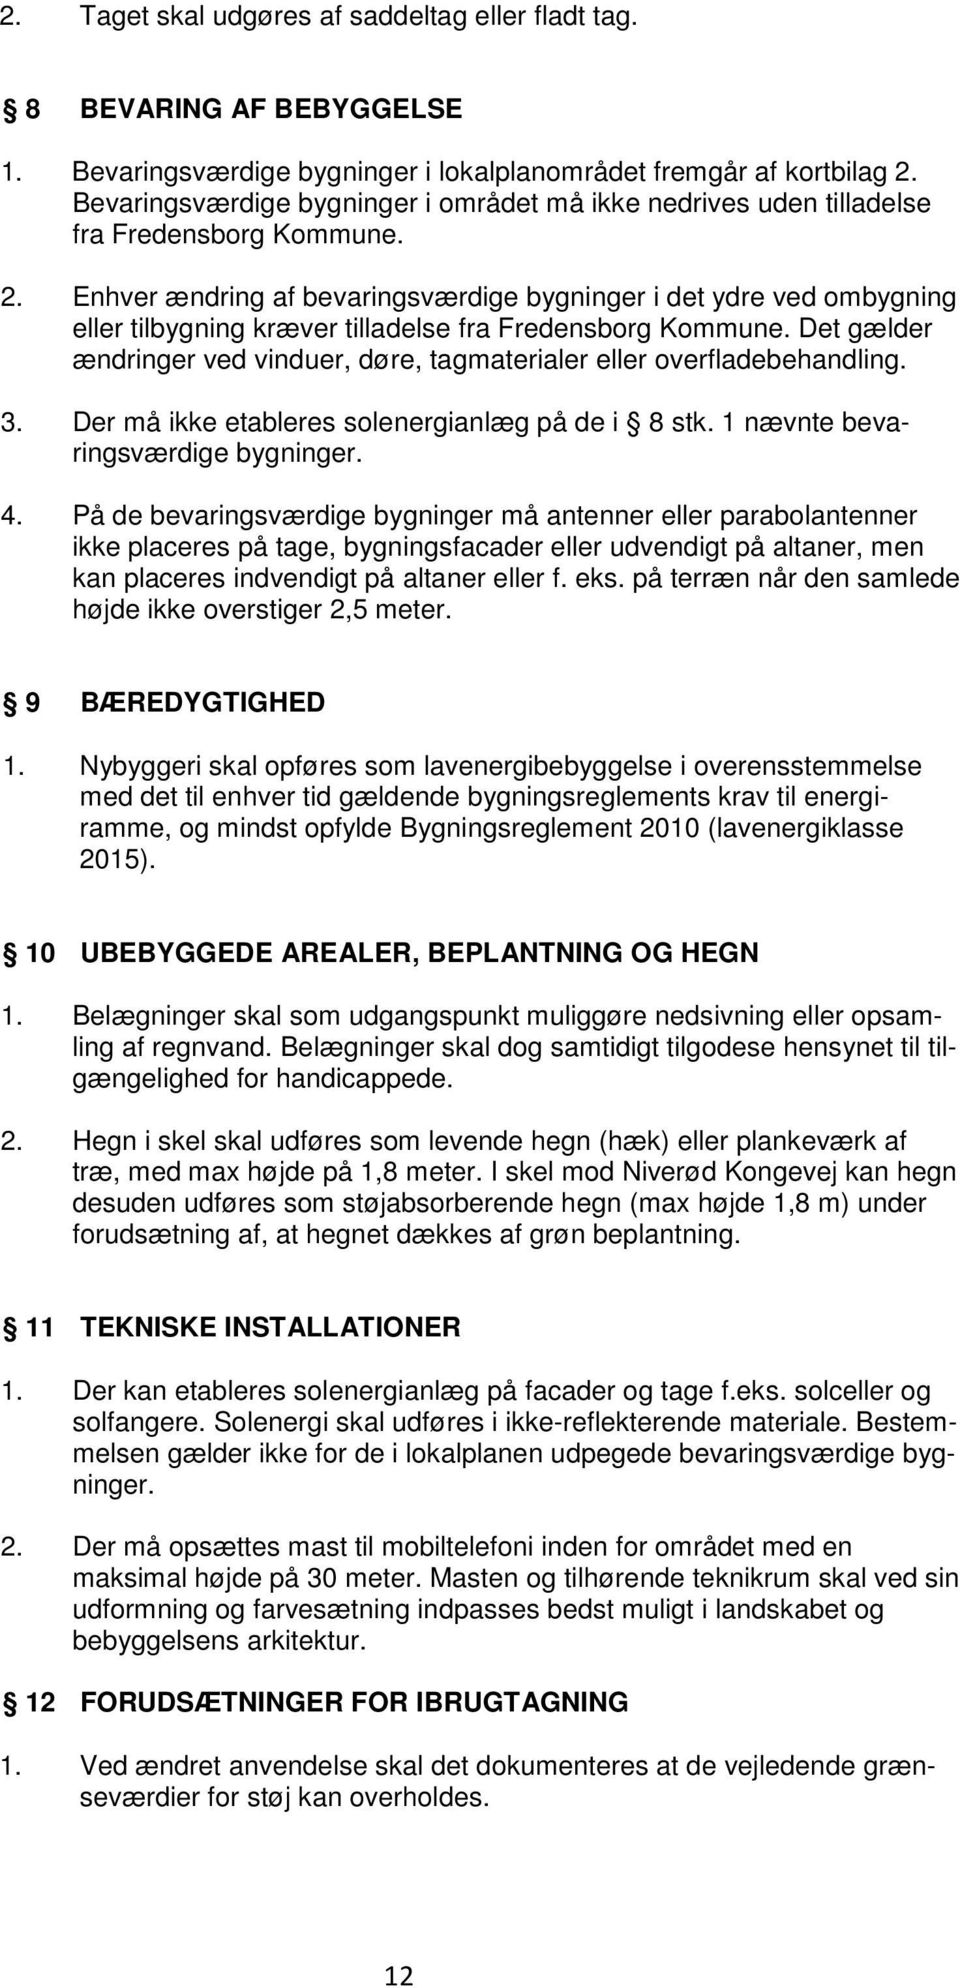 Enhver ændring af bevaringsværdige bygninger i det ydre ved ombygning eller tilbygning kræver tilladelse fra Fredensborg Kommune.